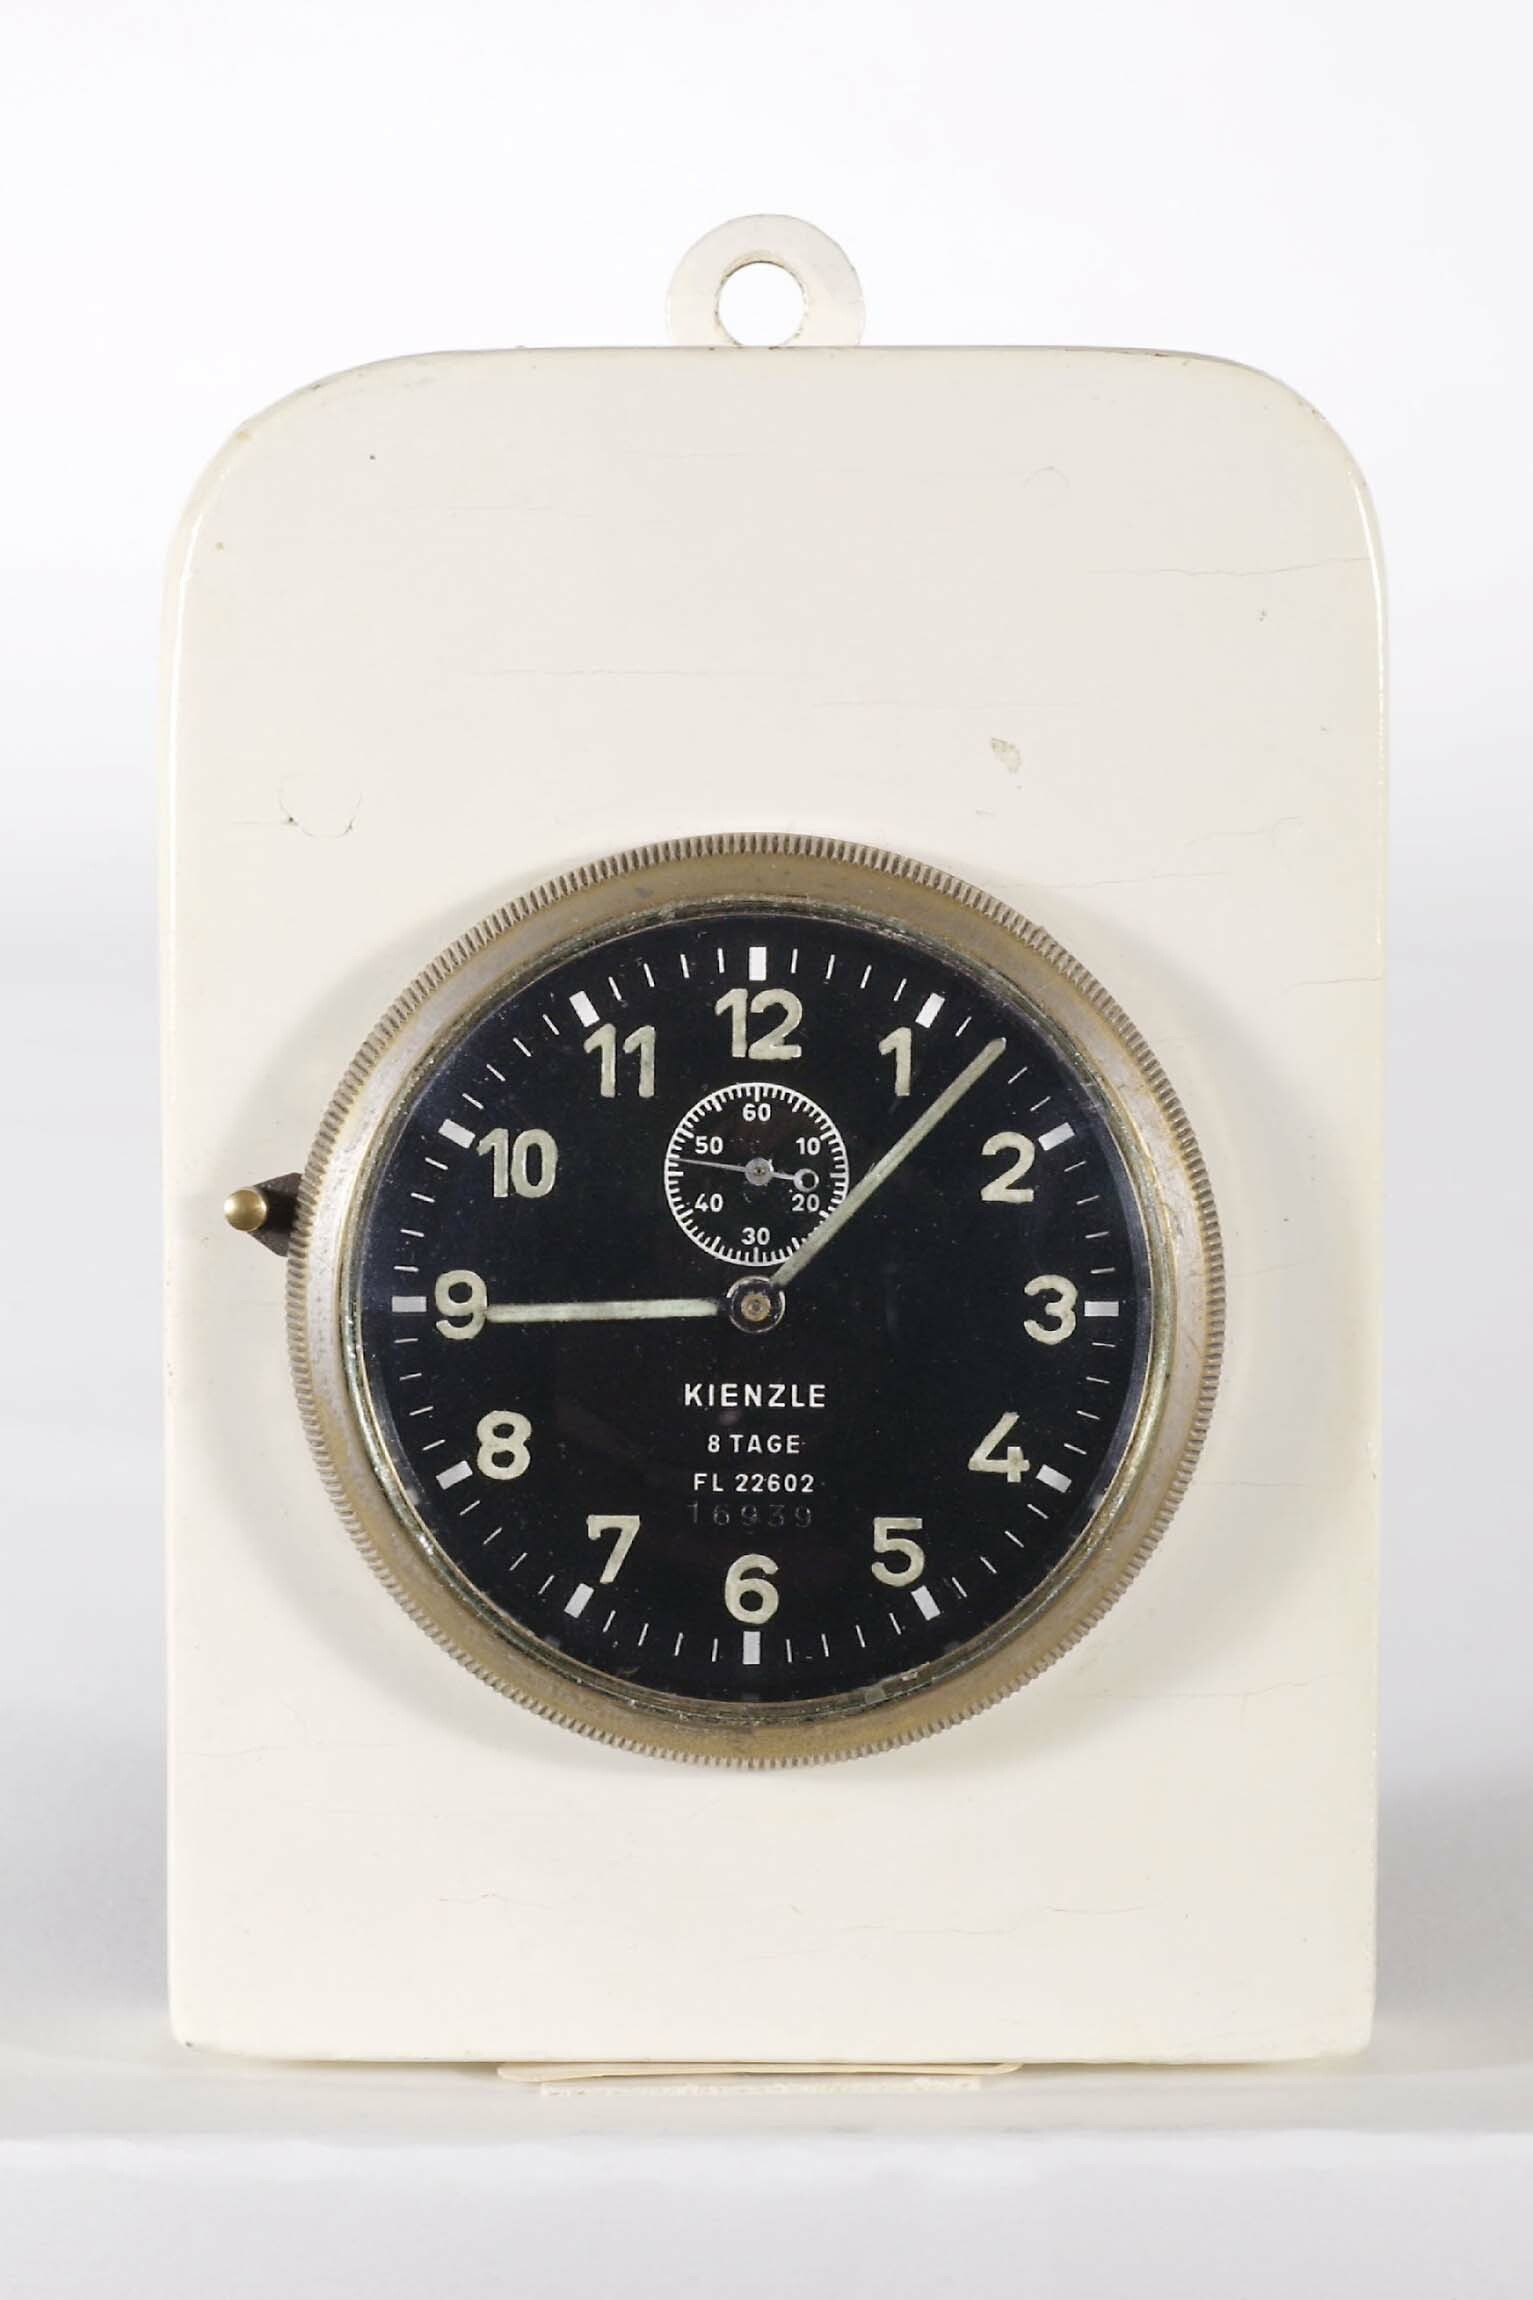 Selbstgebaute Küchenuhr aus militärischer Fahrzeuguhr, um 1946 (Deutsches Uhrenmuseum CC BY-SA)